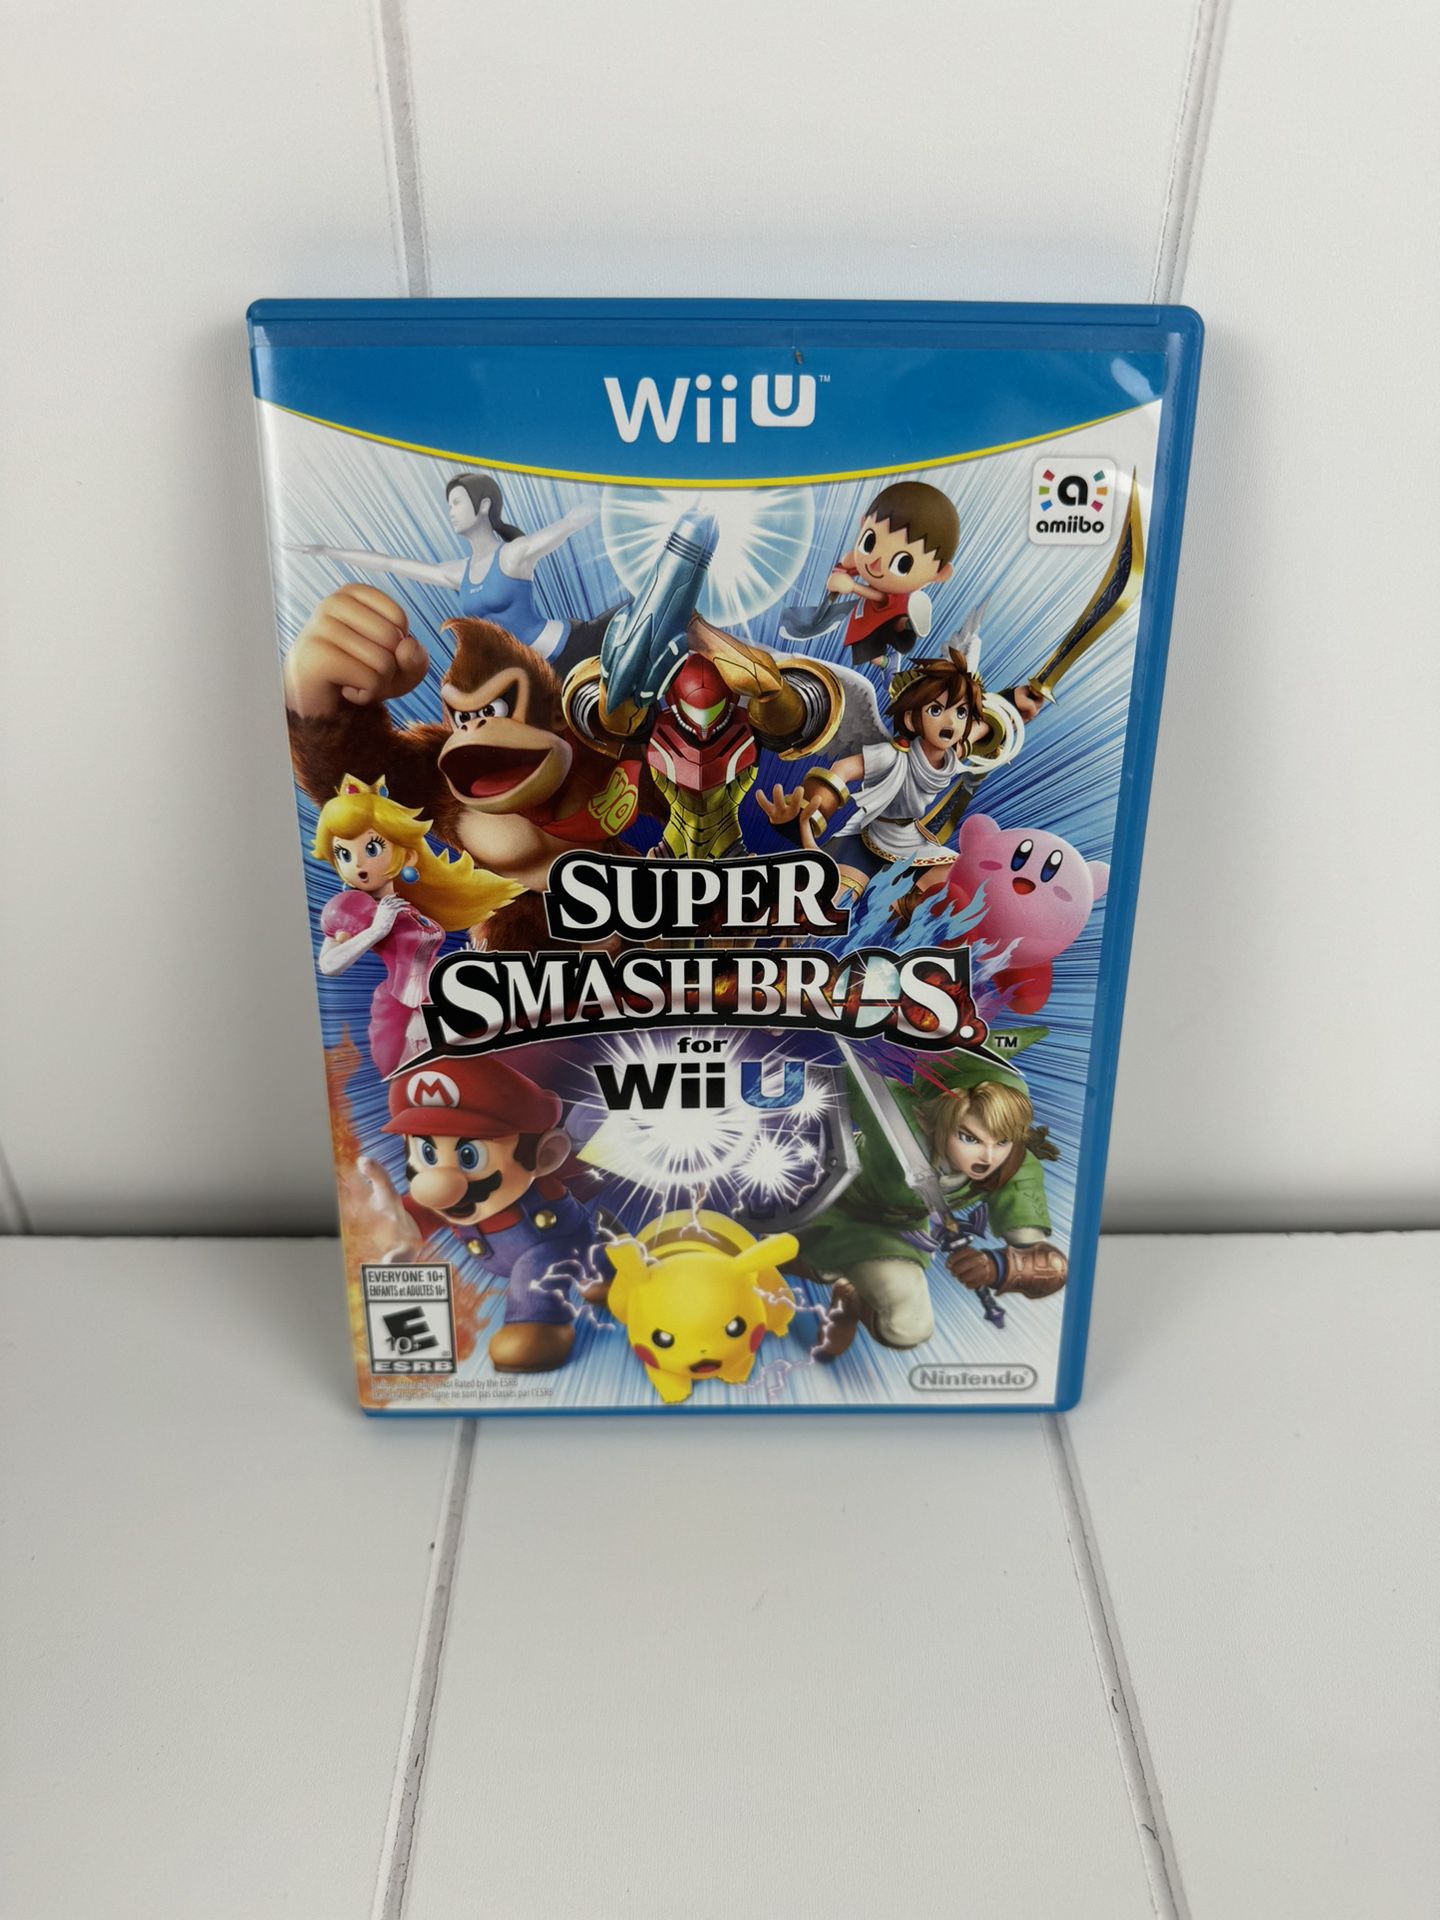 Super Smash Bros For Nintendo Wii U